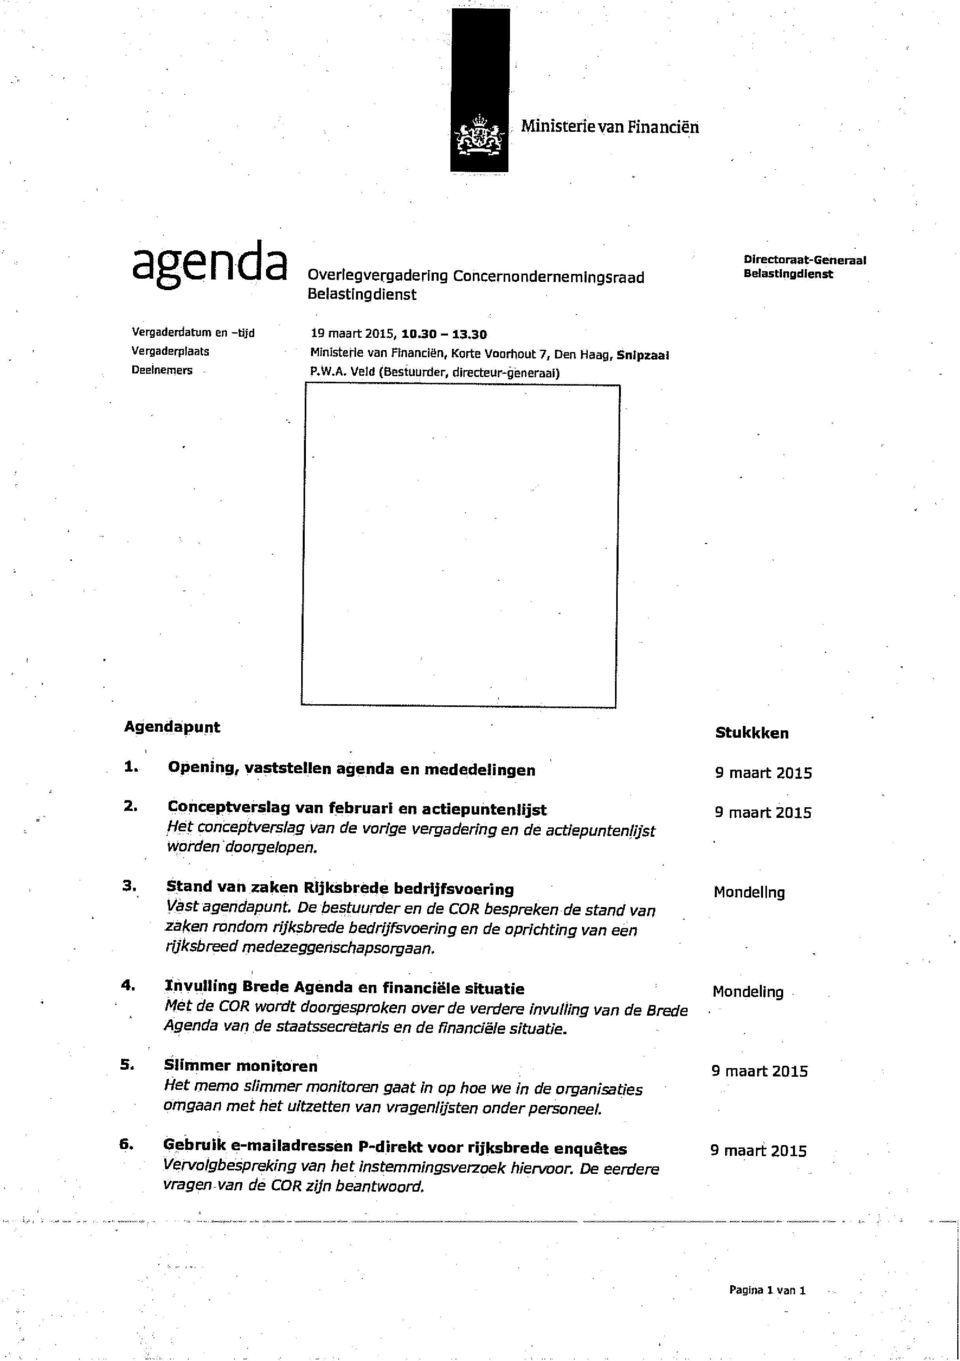 Conceptverslag van februari en actiepuntenlijst Het conceptverslag van de vorige vergadering en de actiepuntenlijst Worden doorgelopen. 9 maart 2015 9 maart 2015 3.